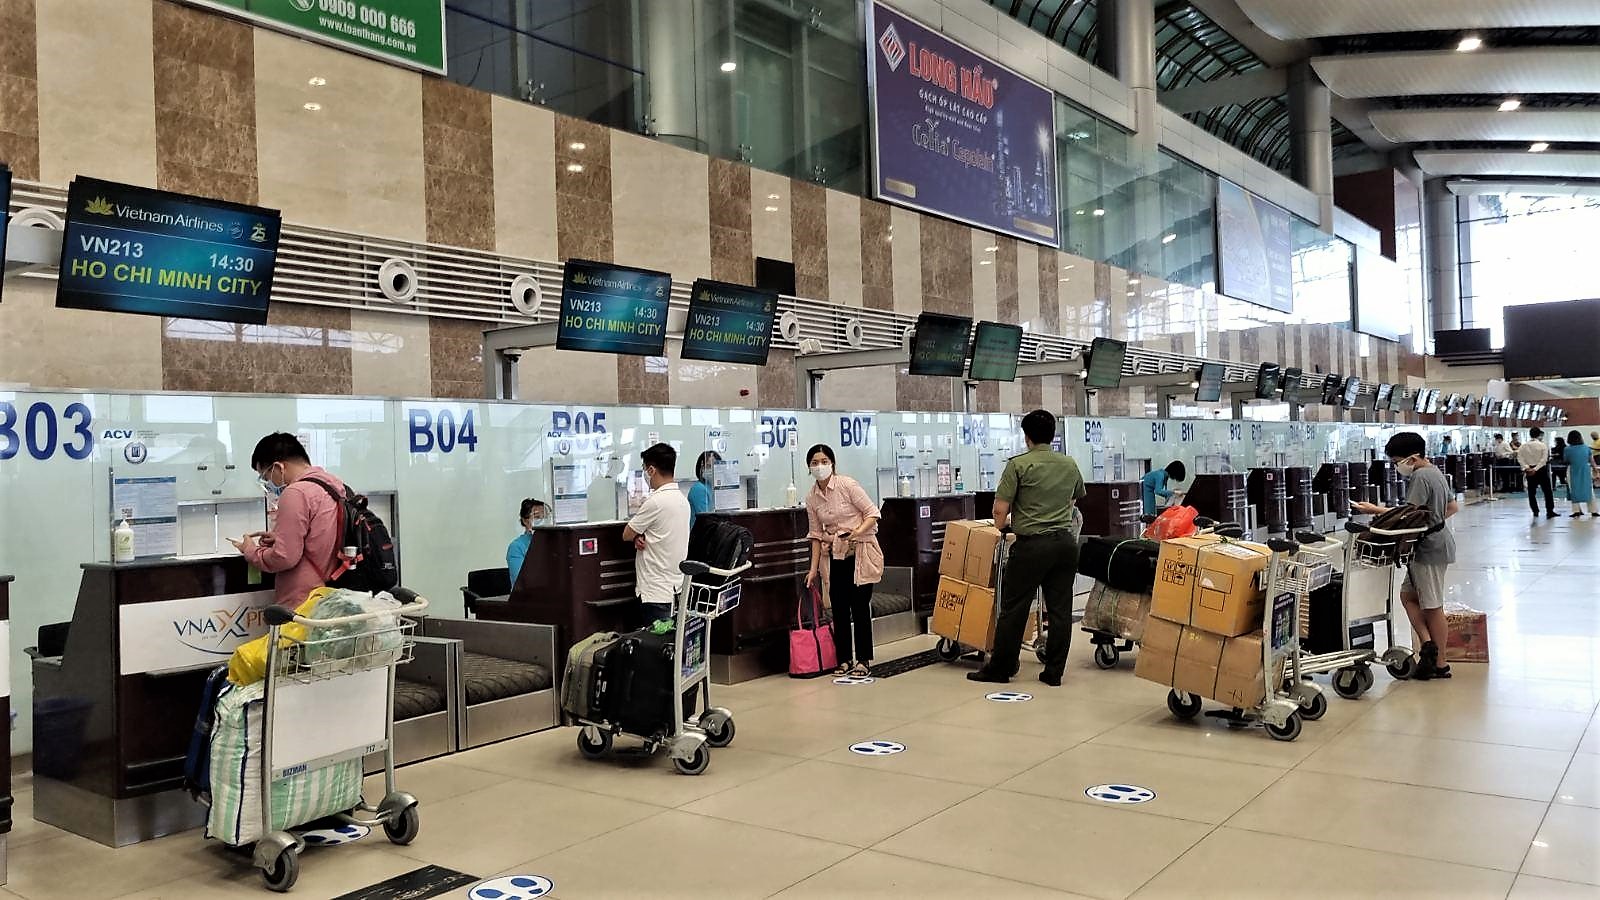 Vietnam Airlines thực hiện chuyến bay đầu tiên từ TP.HCM đi Hà Nội sau dịch - Ảnh 1.